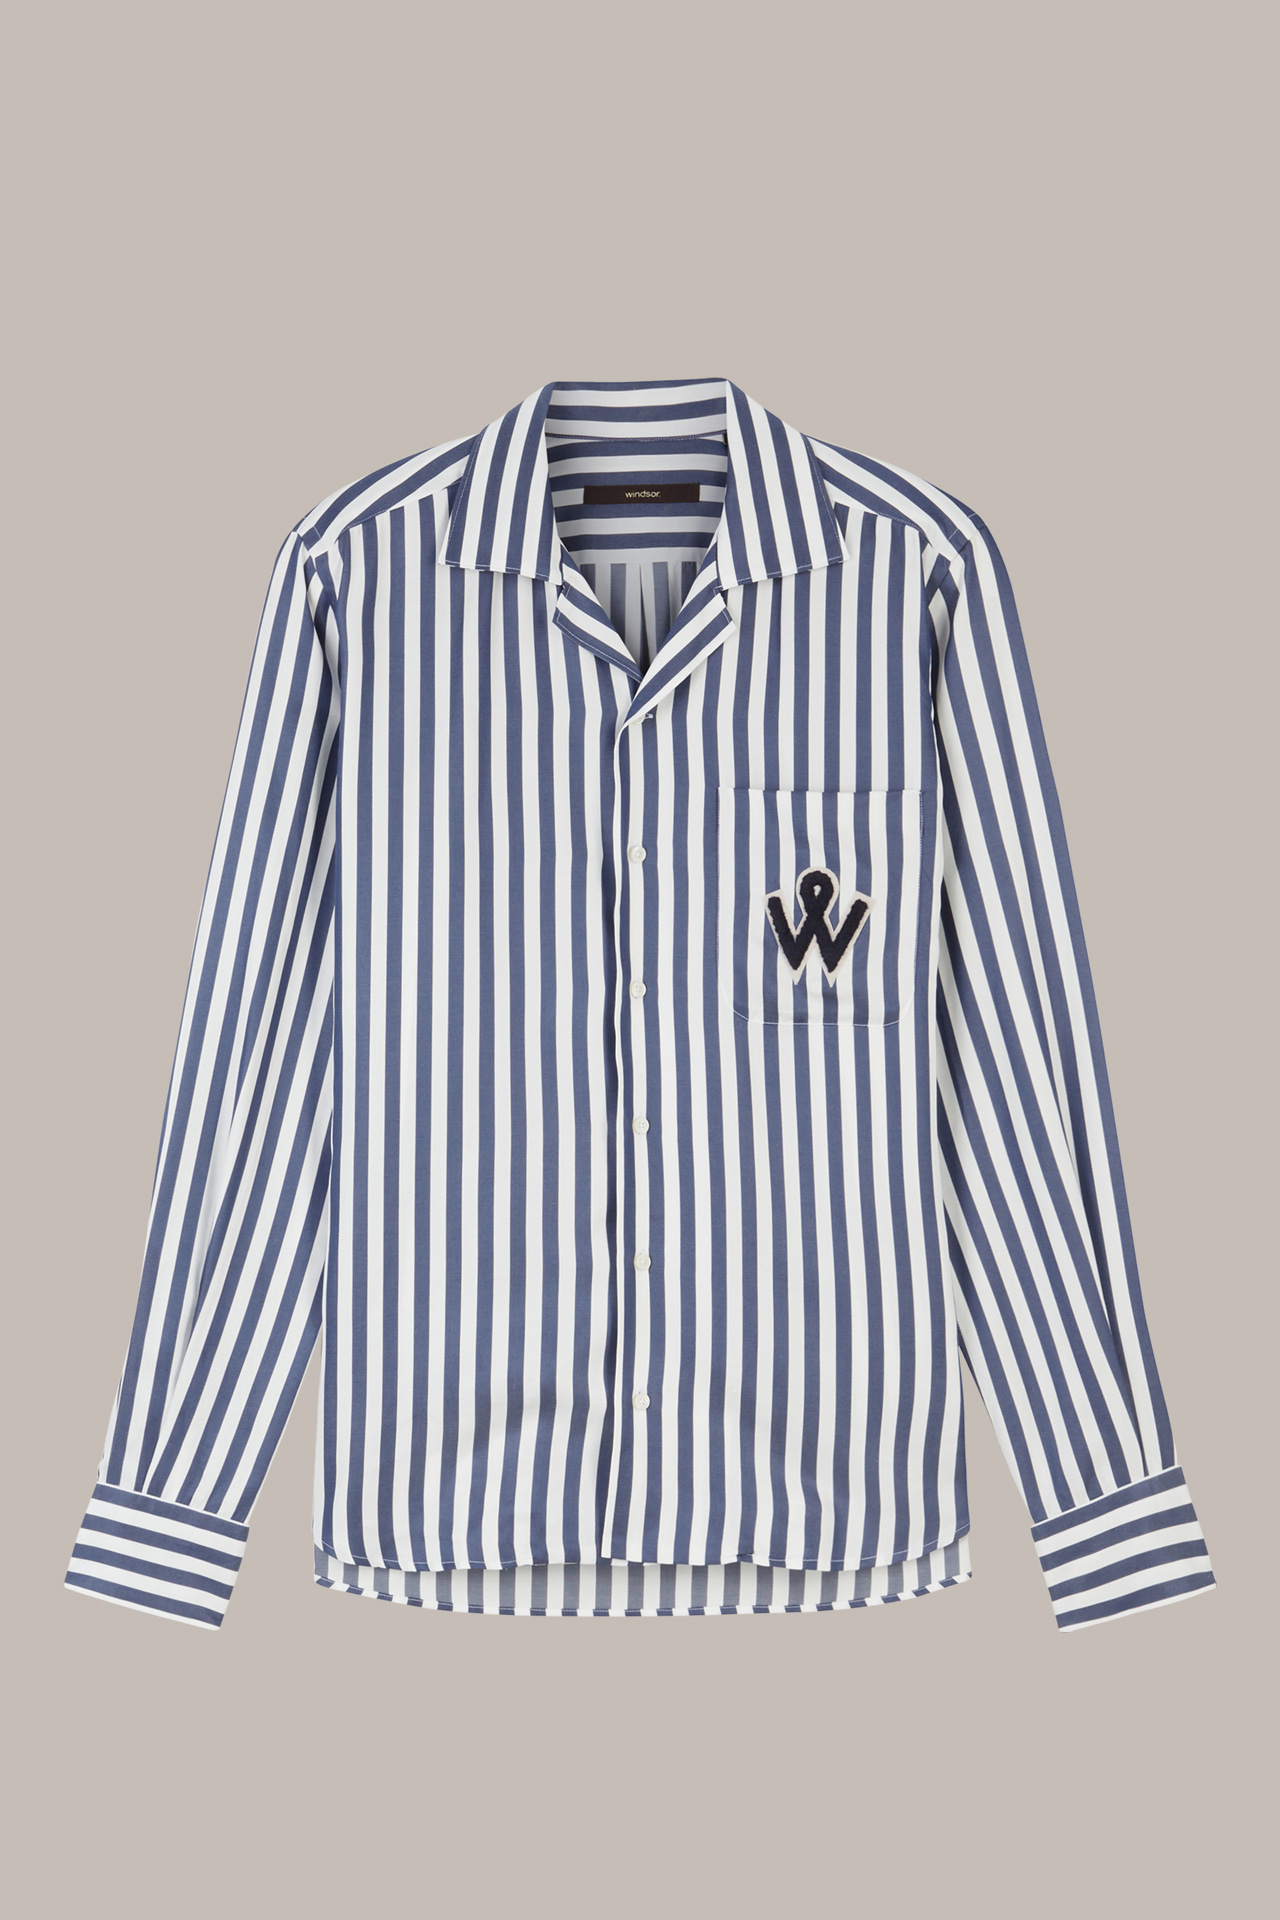 Unisex lyocell pyjama shirt in navy stripes